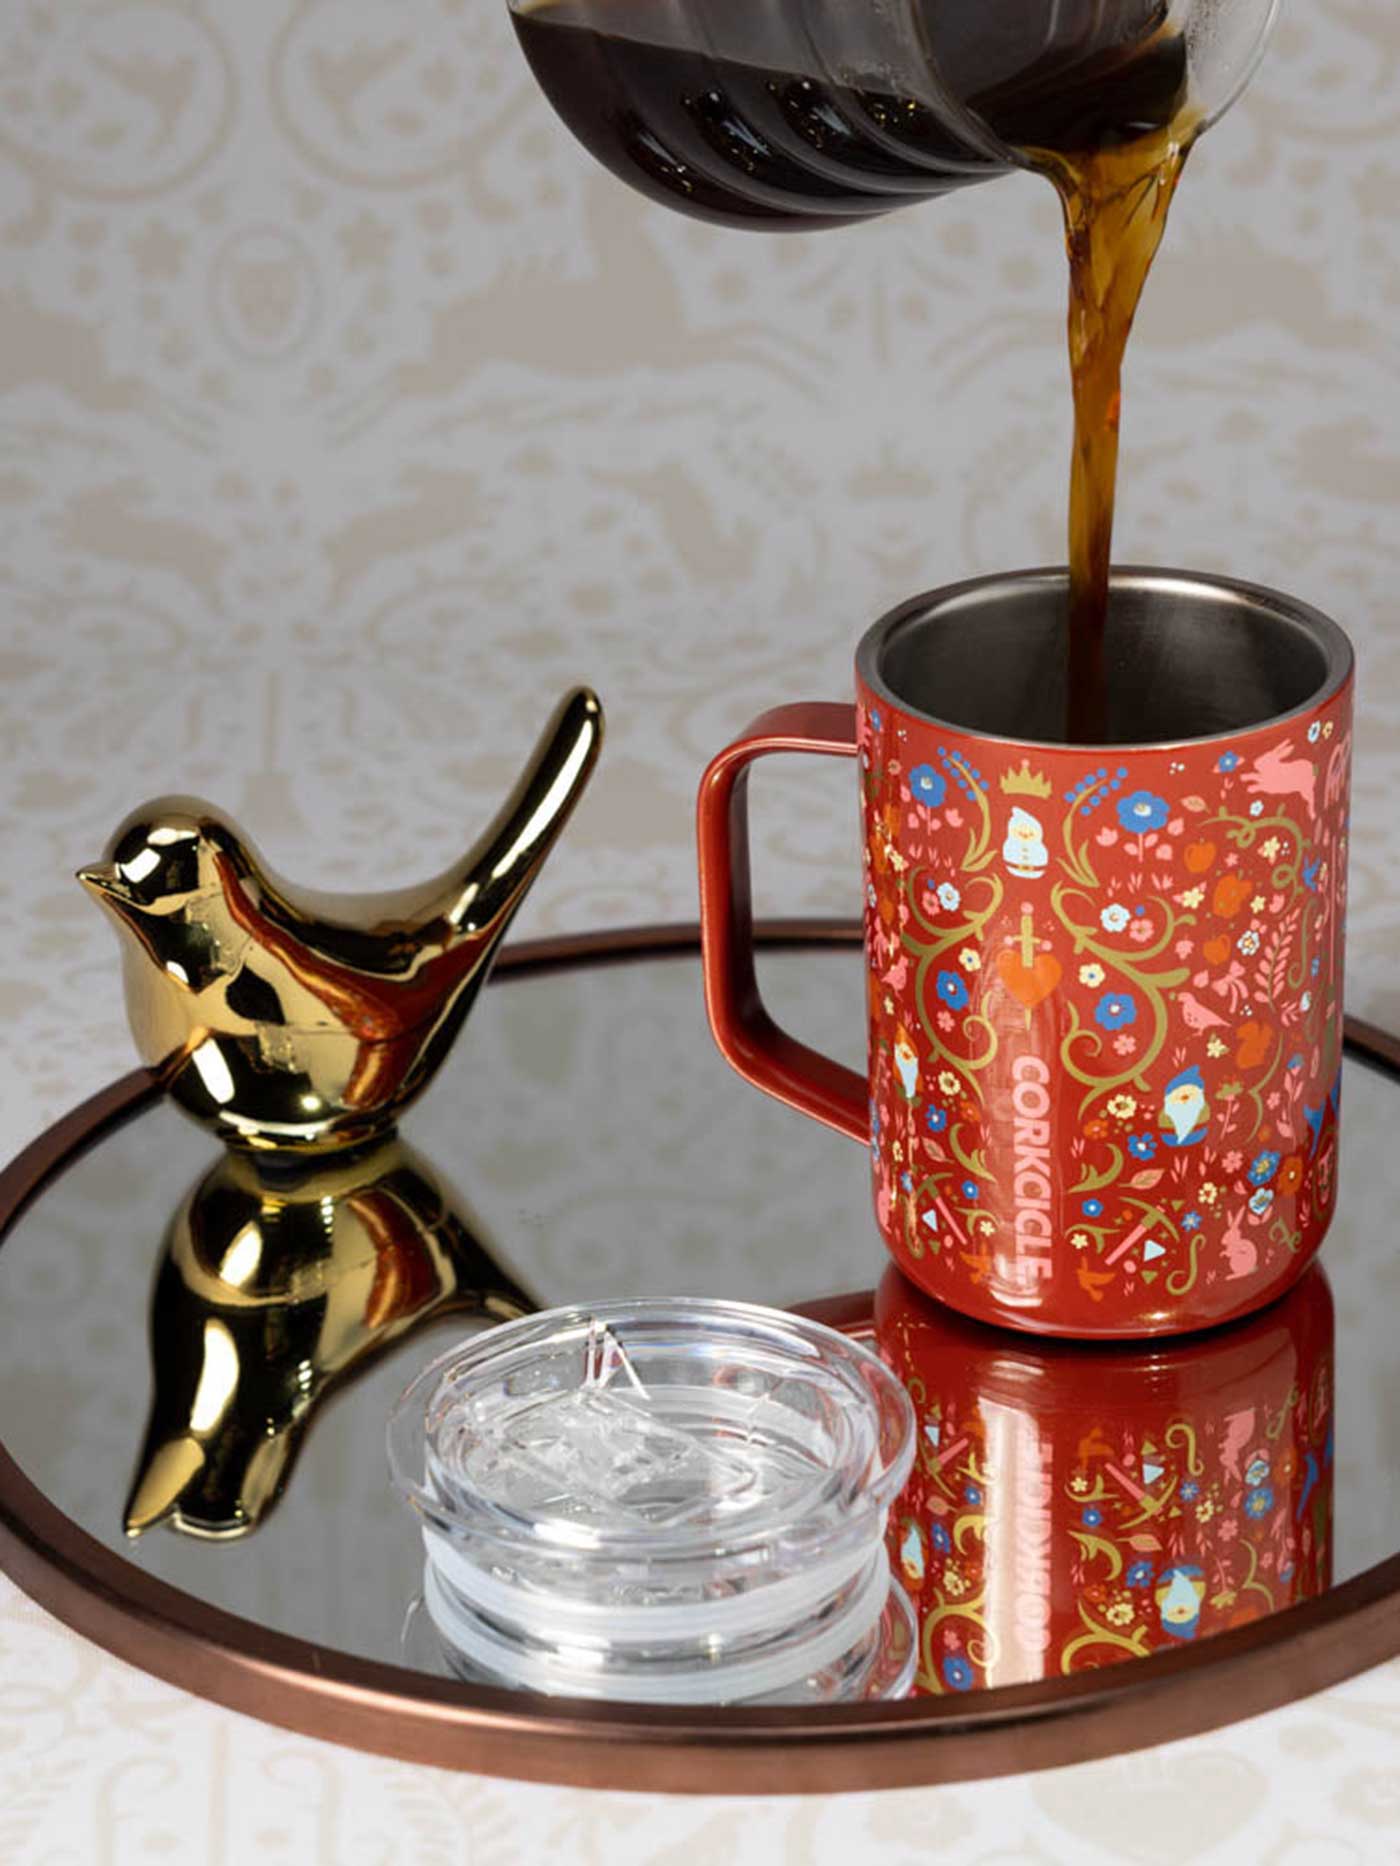 16 oz. Disney Cinderella Corkcicle Coffee Mug – Bellis Boutique